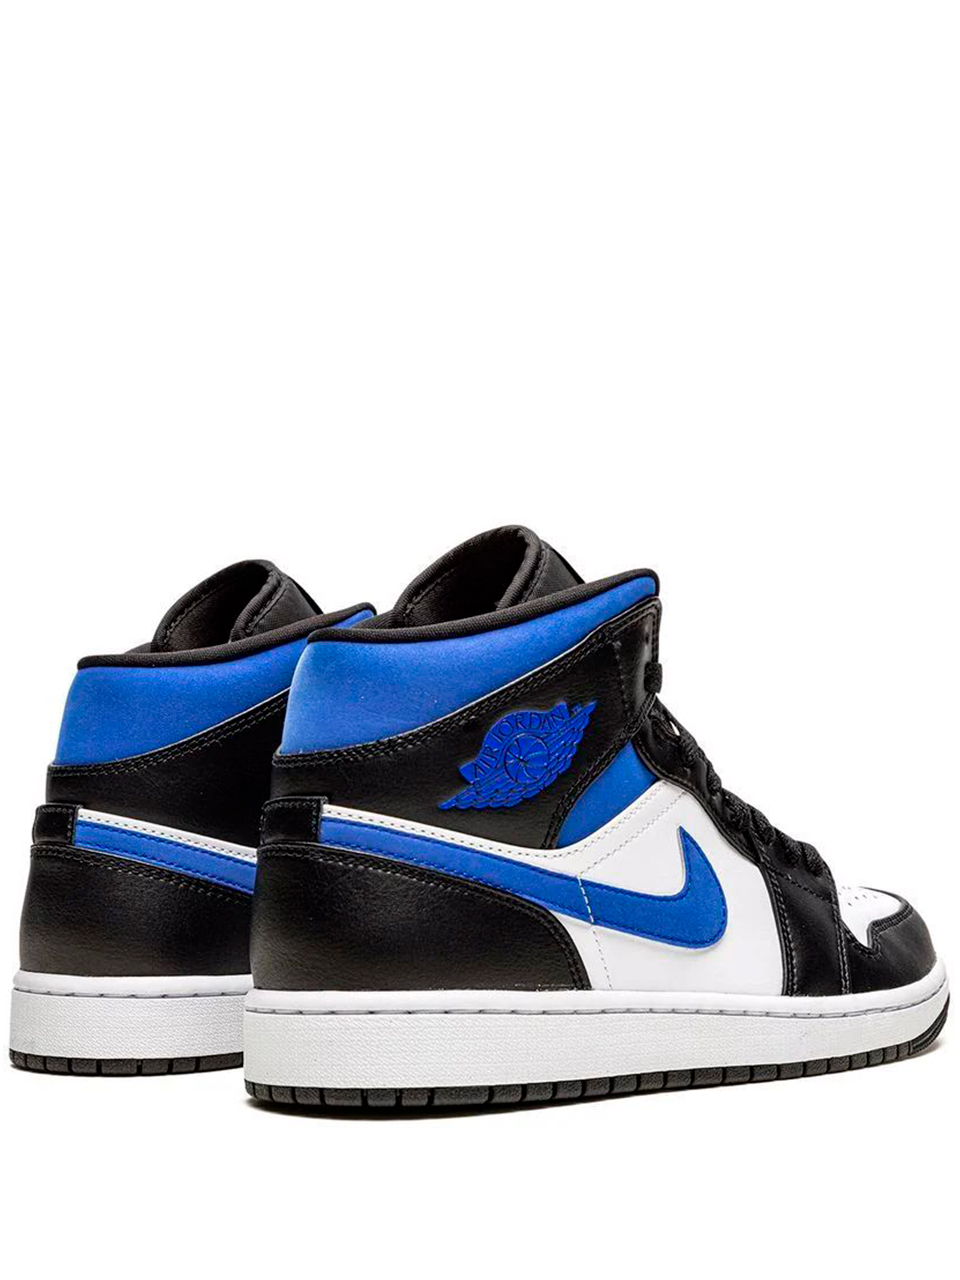 Imagem de: Tênis Nike Air Jordan 1 Azul e Preto